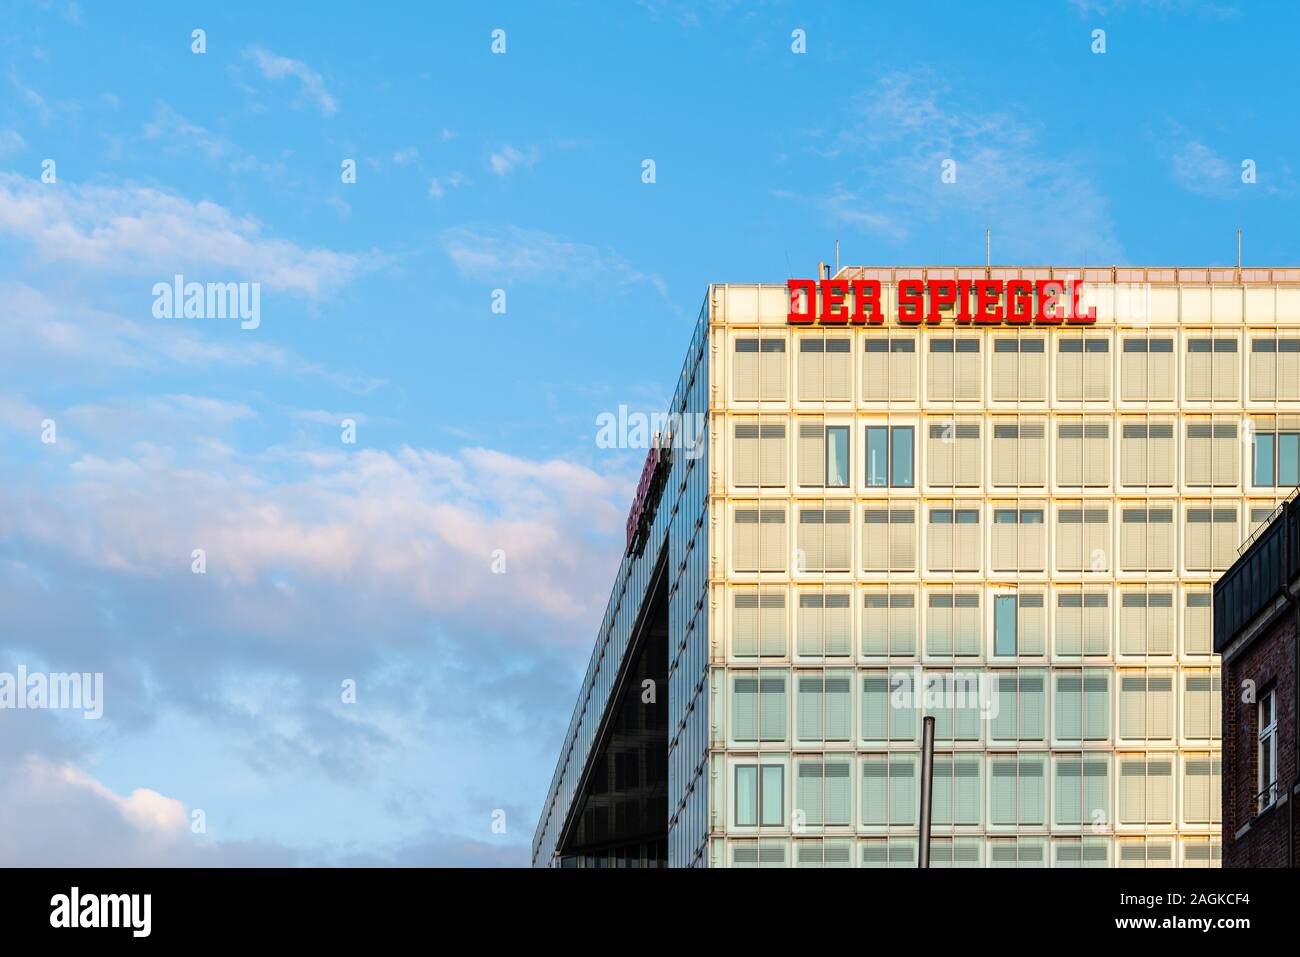 Hamburg, Deutschland - 3. August 2019: Der Spiegel Banner am Hauptsitz des Unternehmens in Hamburg. Es ist eine deutsche Wochenmagazin Stockfoto